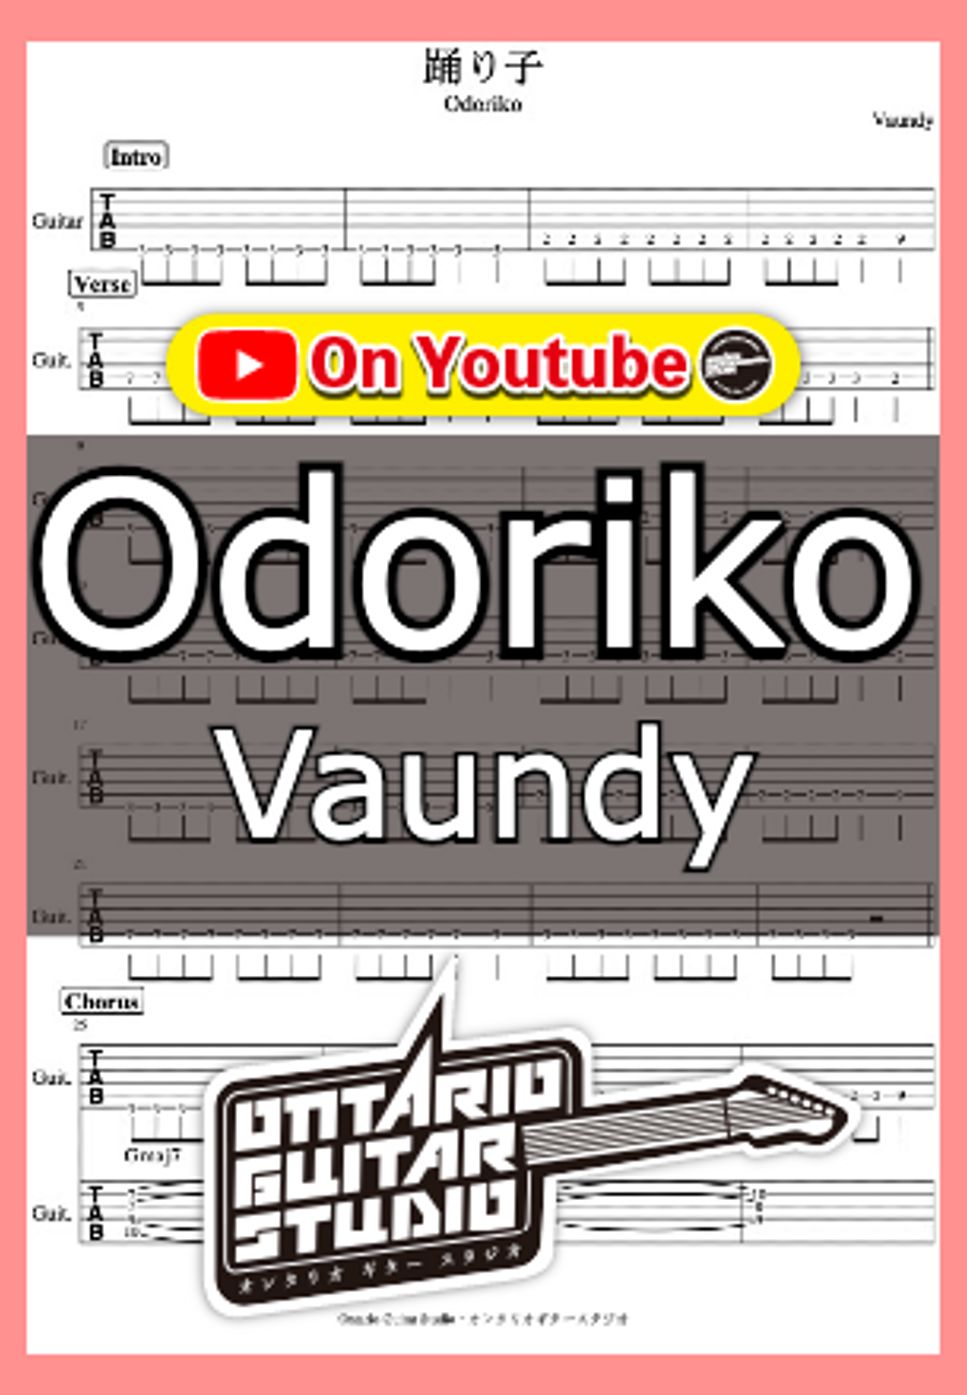 Vaundy - Odoriko by Ontario Guitar Studio